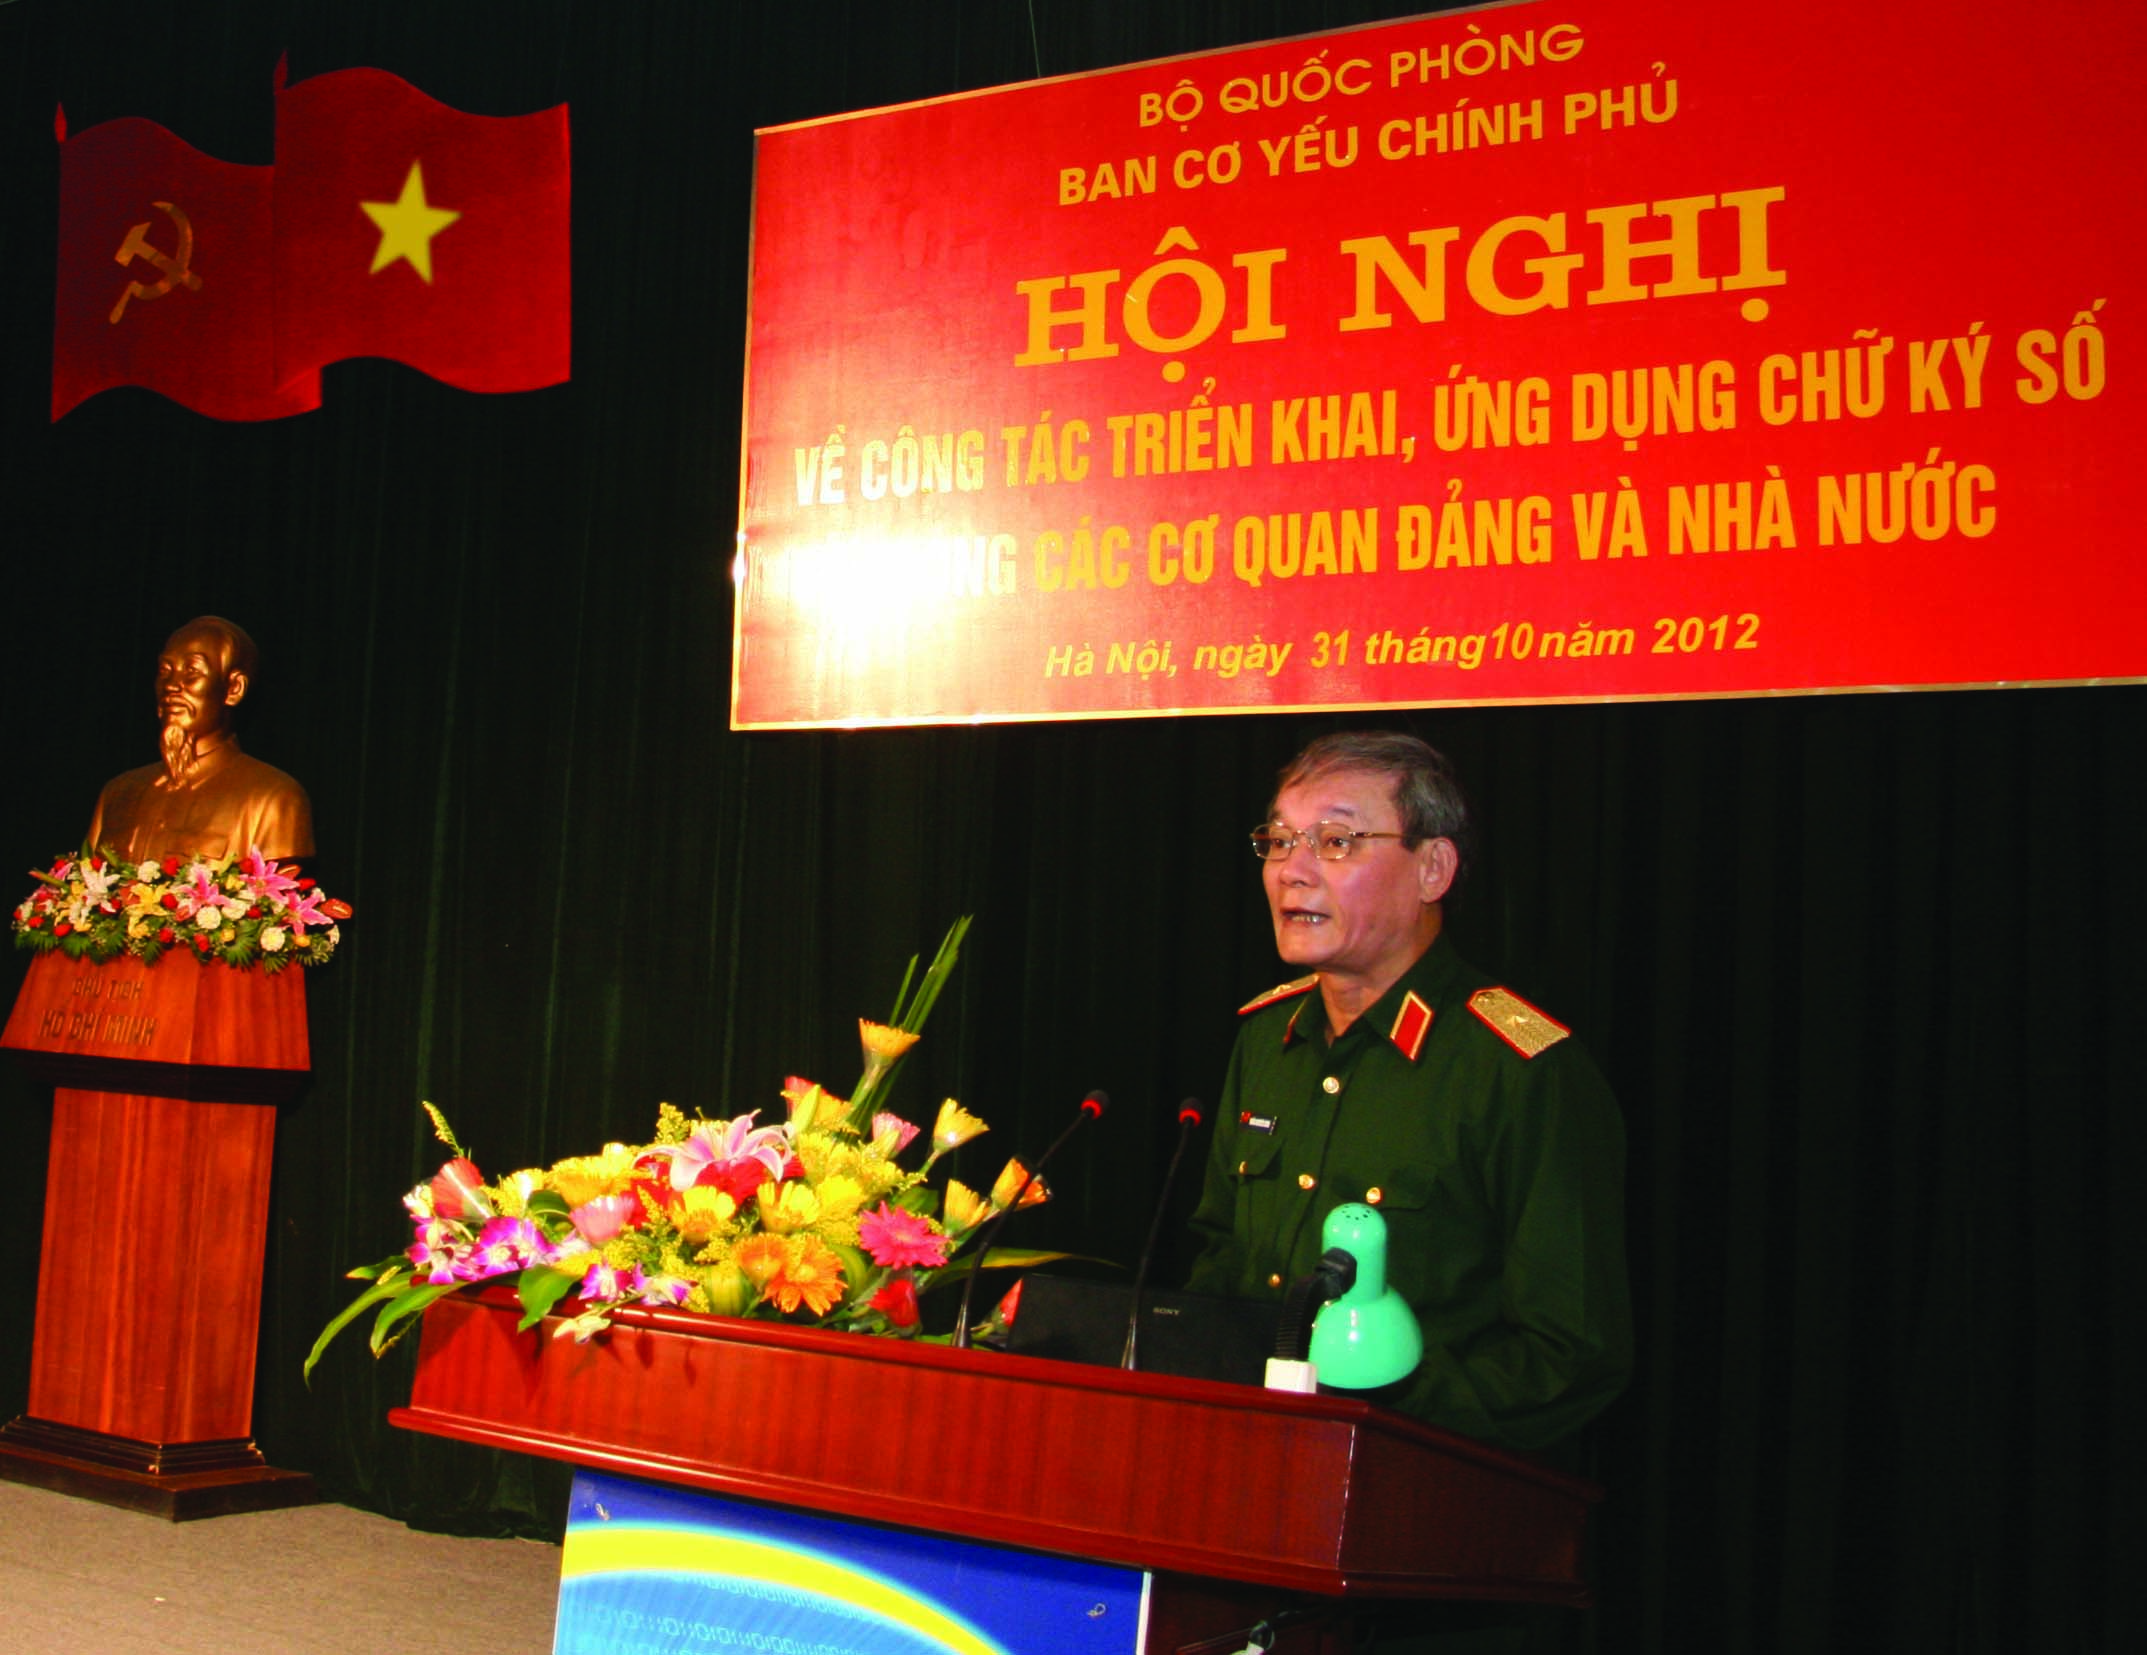 Thiếu tướng, TS. Trần Nguyên Bình, Trưởng Ban Cơ yếu Chính phủ phát biểu chỉ đạo tại Hội nghị về công tác triển khai ứng dụng chữ ký số trong hoạt động của các cơ quan Đảng và Nhà nước (Hà Nội, tháng 10/2012)